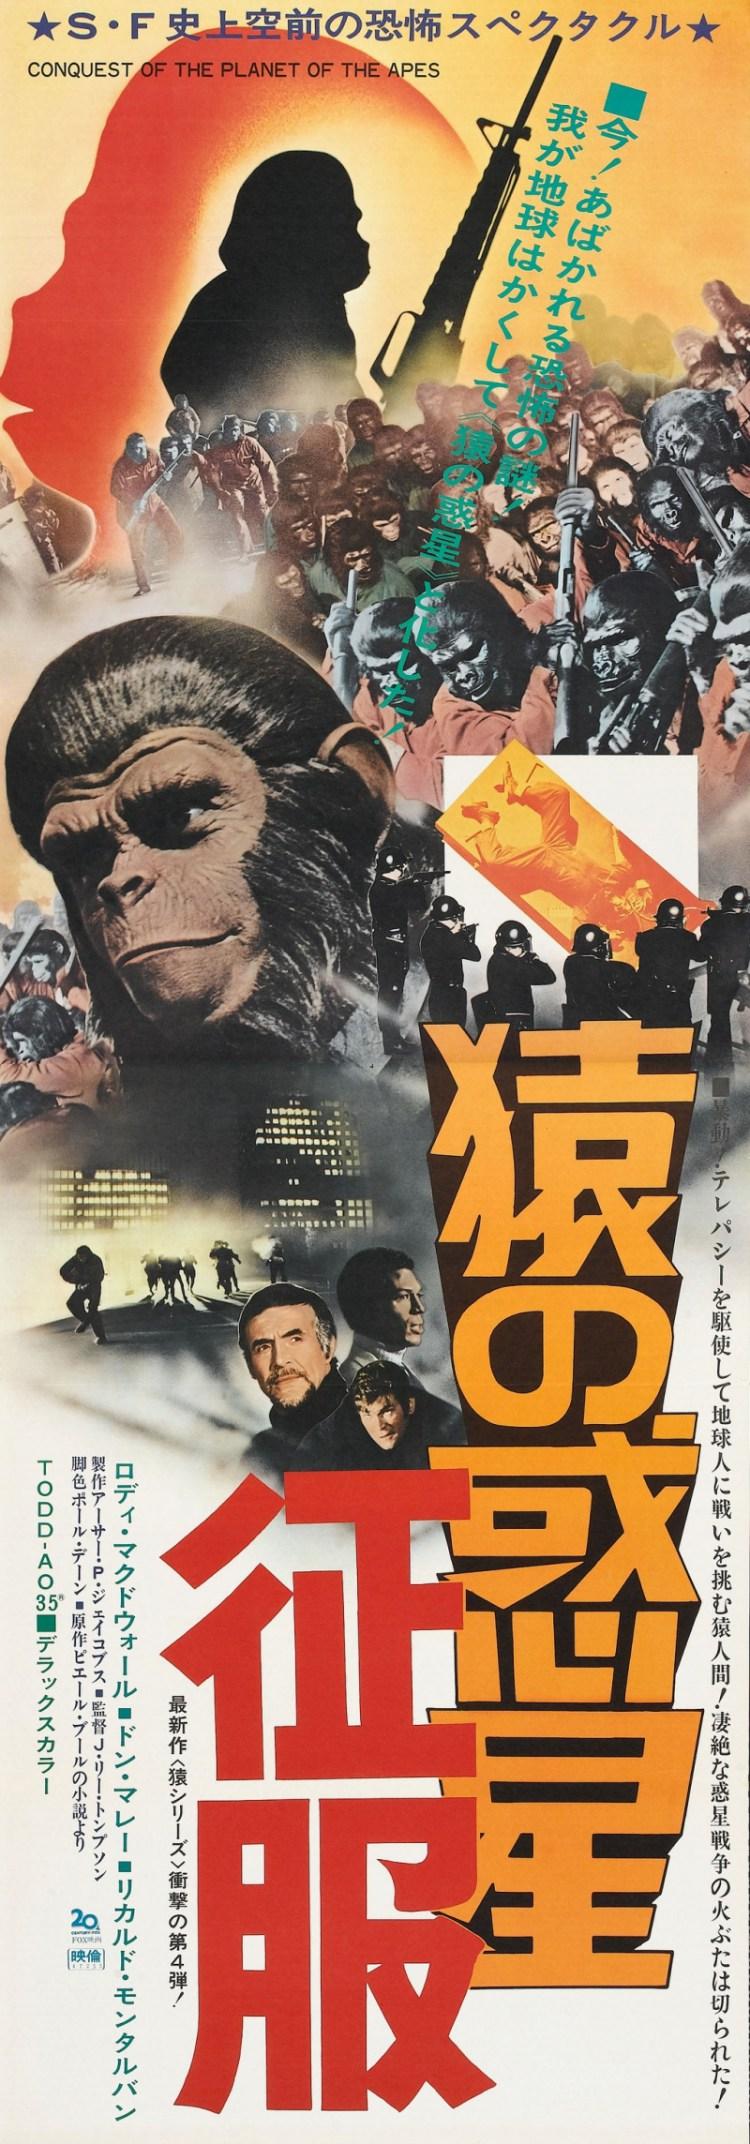 Постер фильма Завоевание планеты обезьян | Conquest of the Planet of the Apes